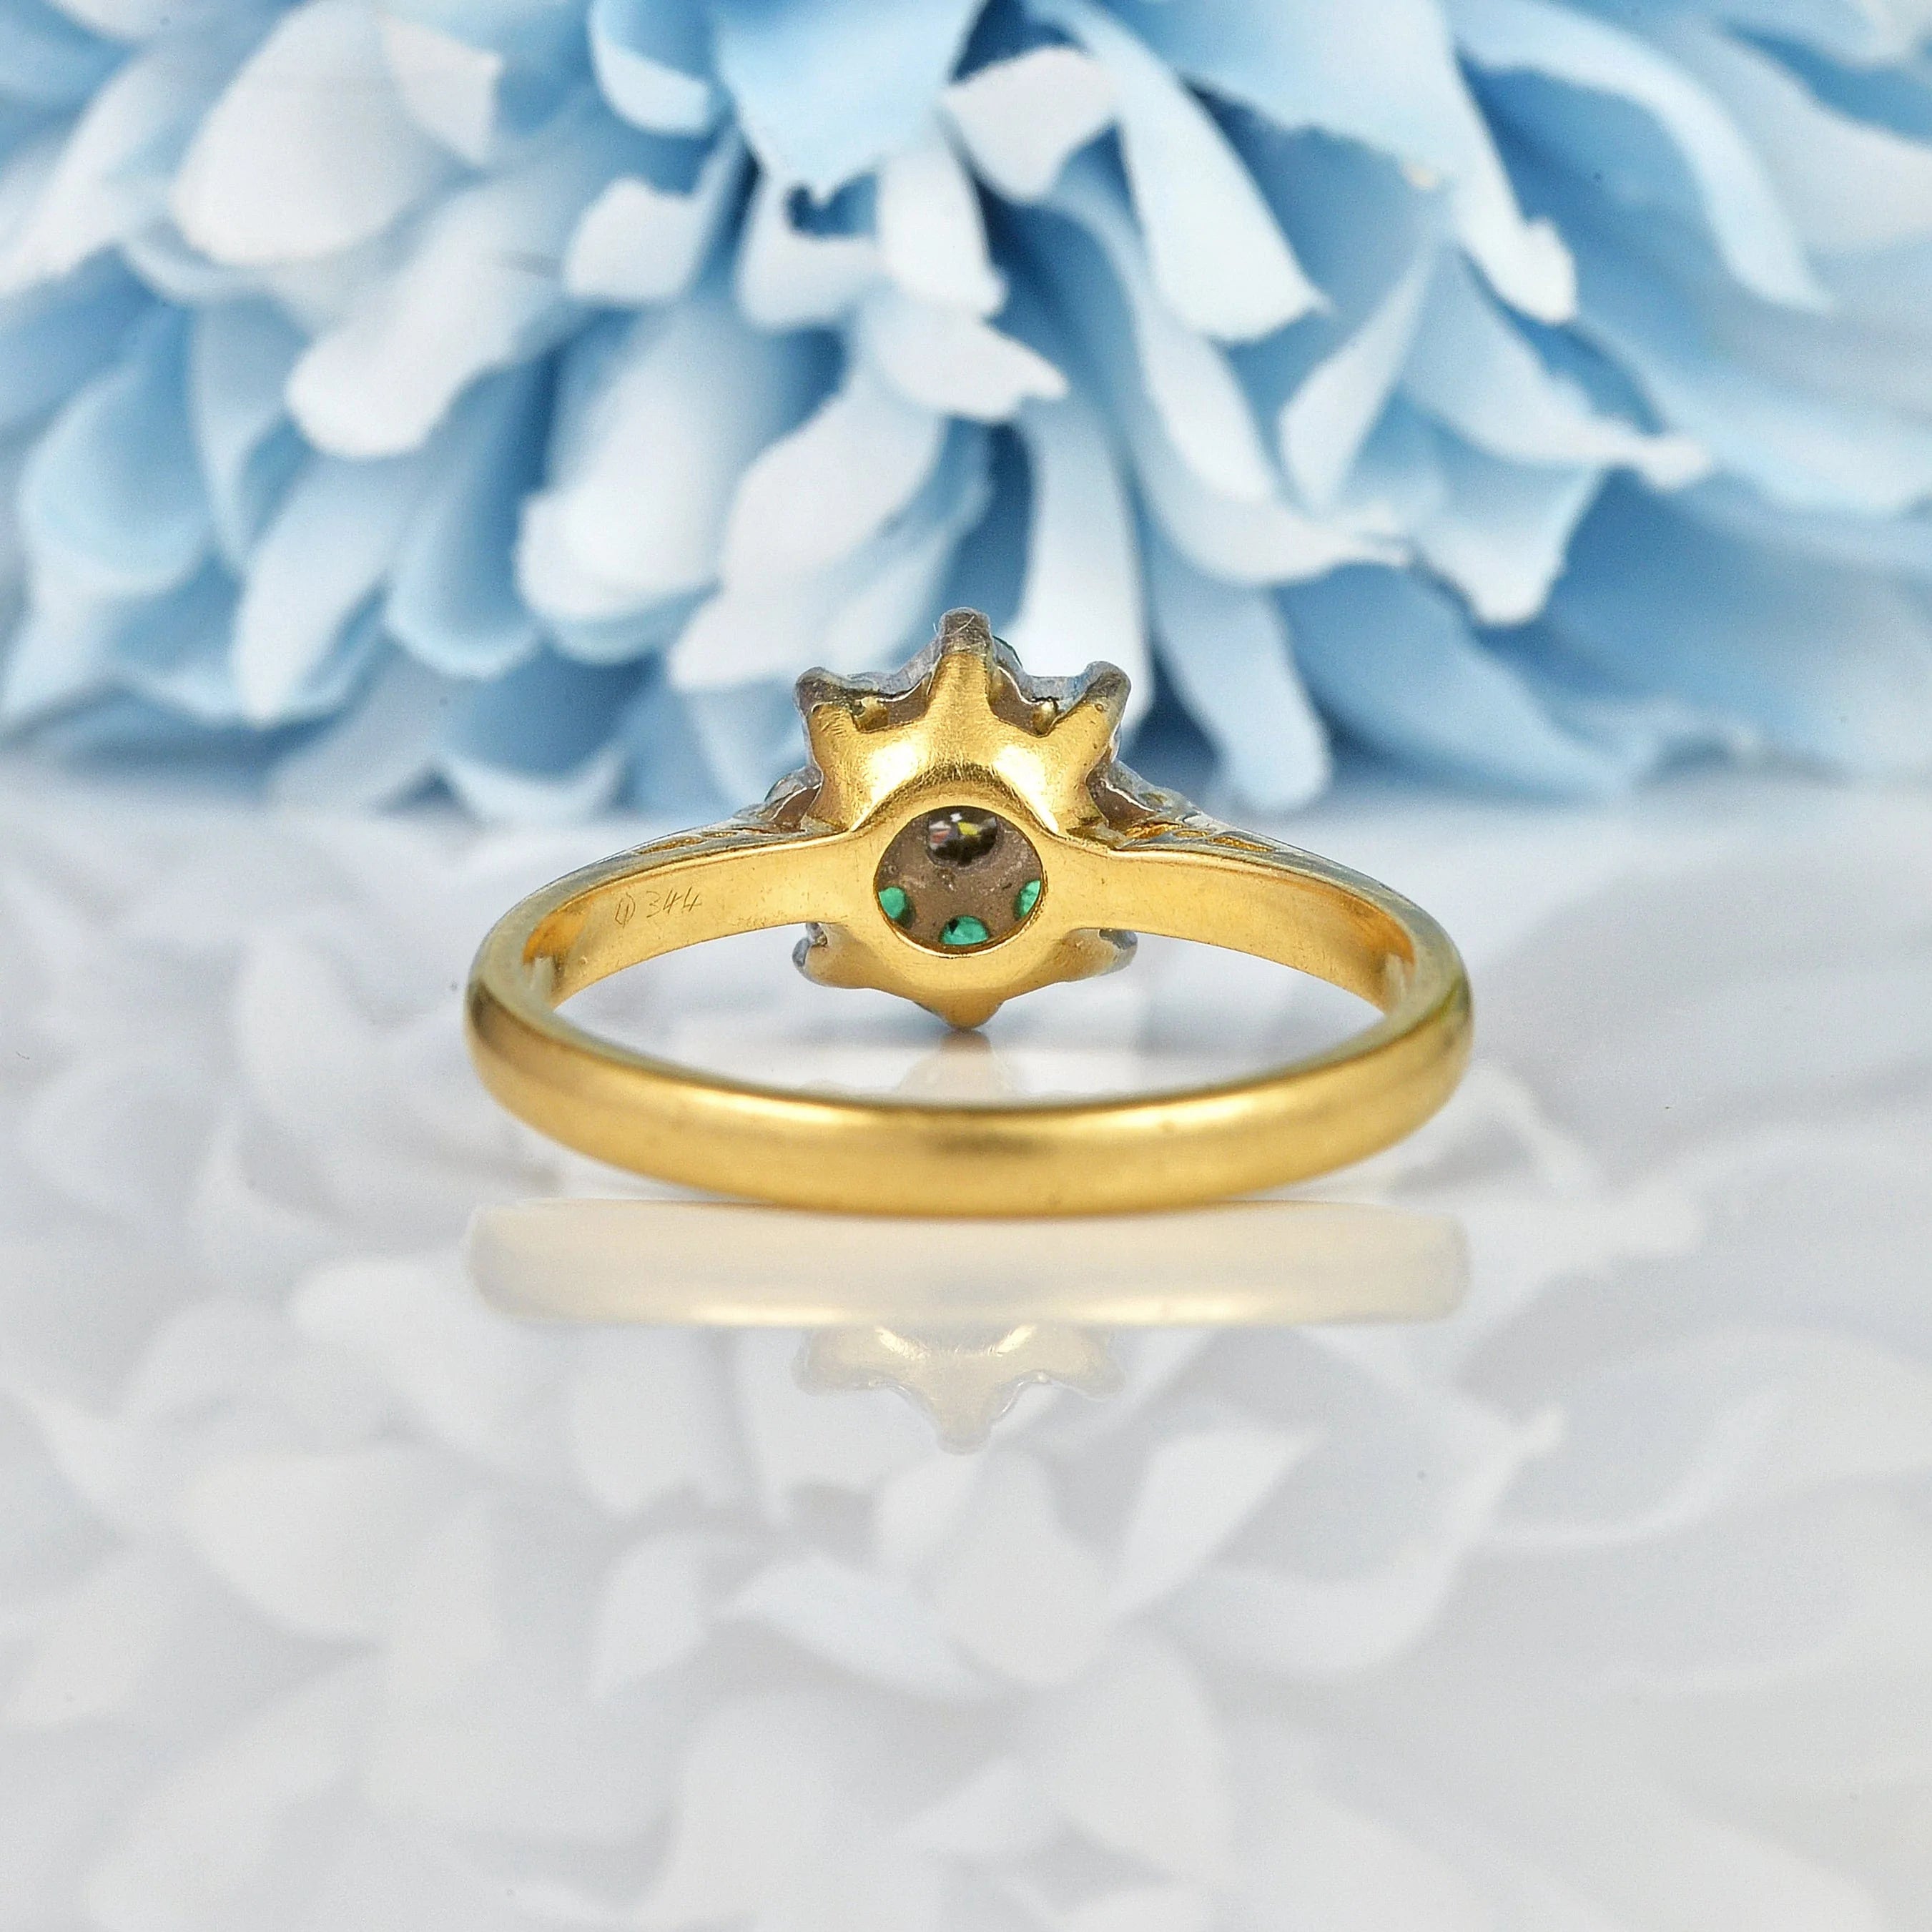 Ellibelle Jewellery VINTAGE EMERALD & DIAMOND CLUSTER RING